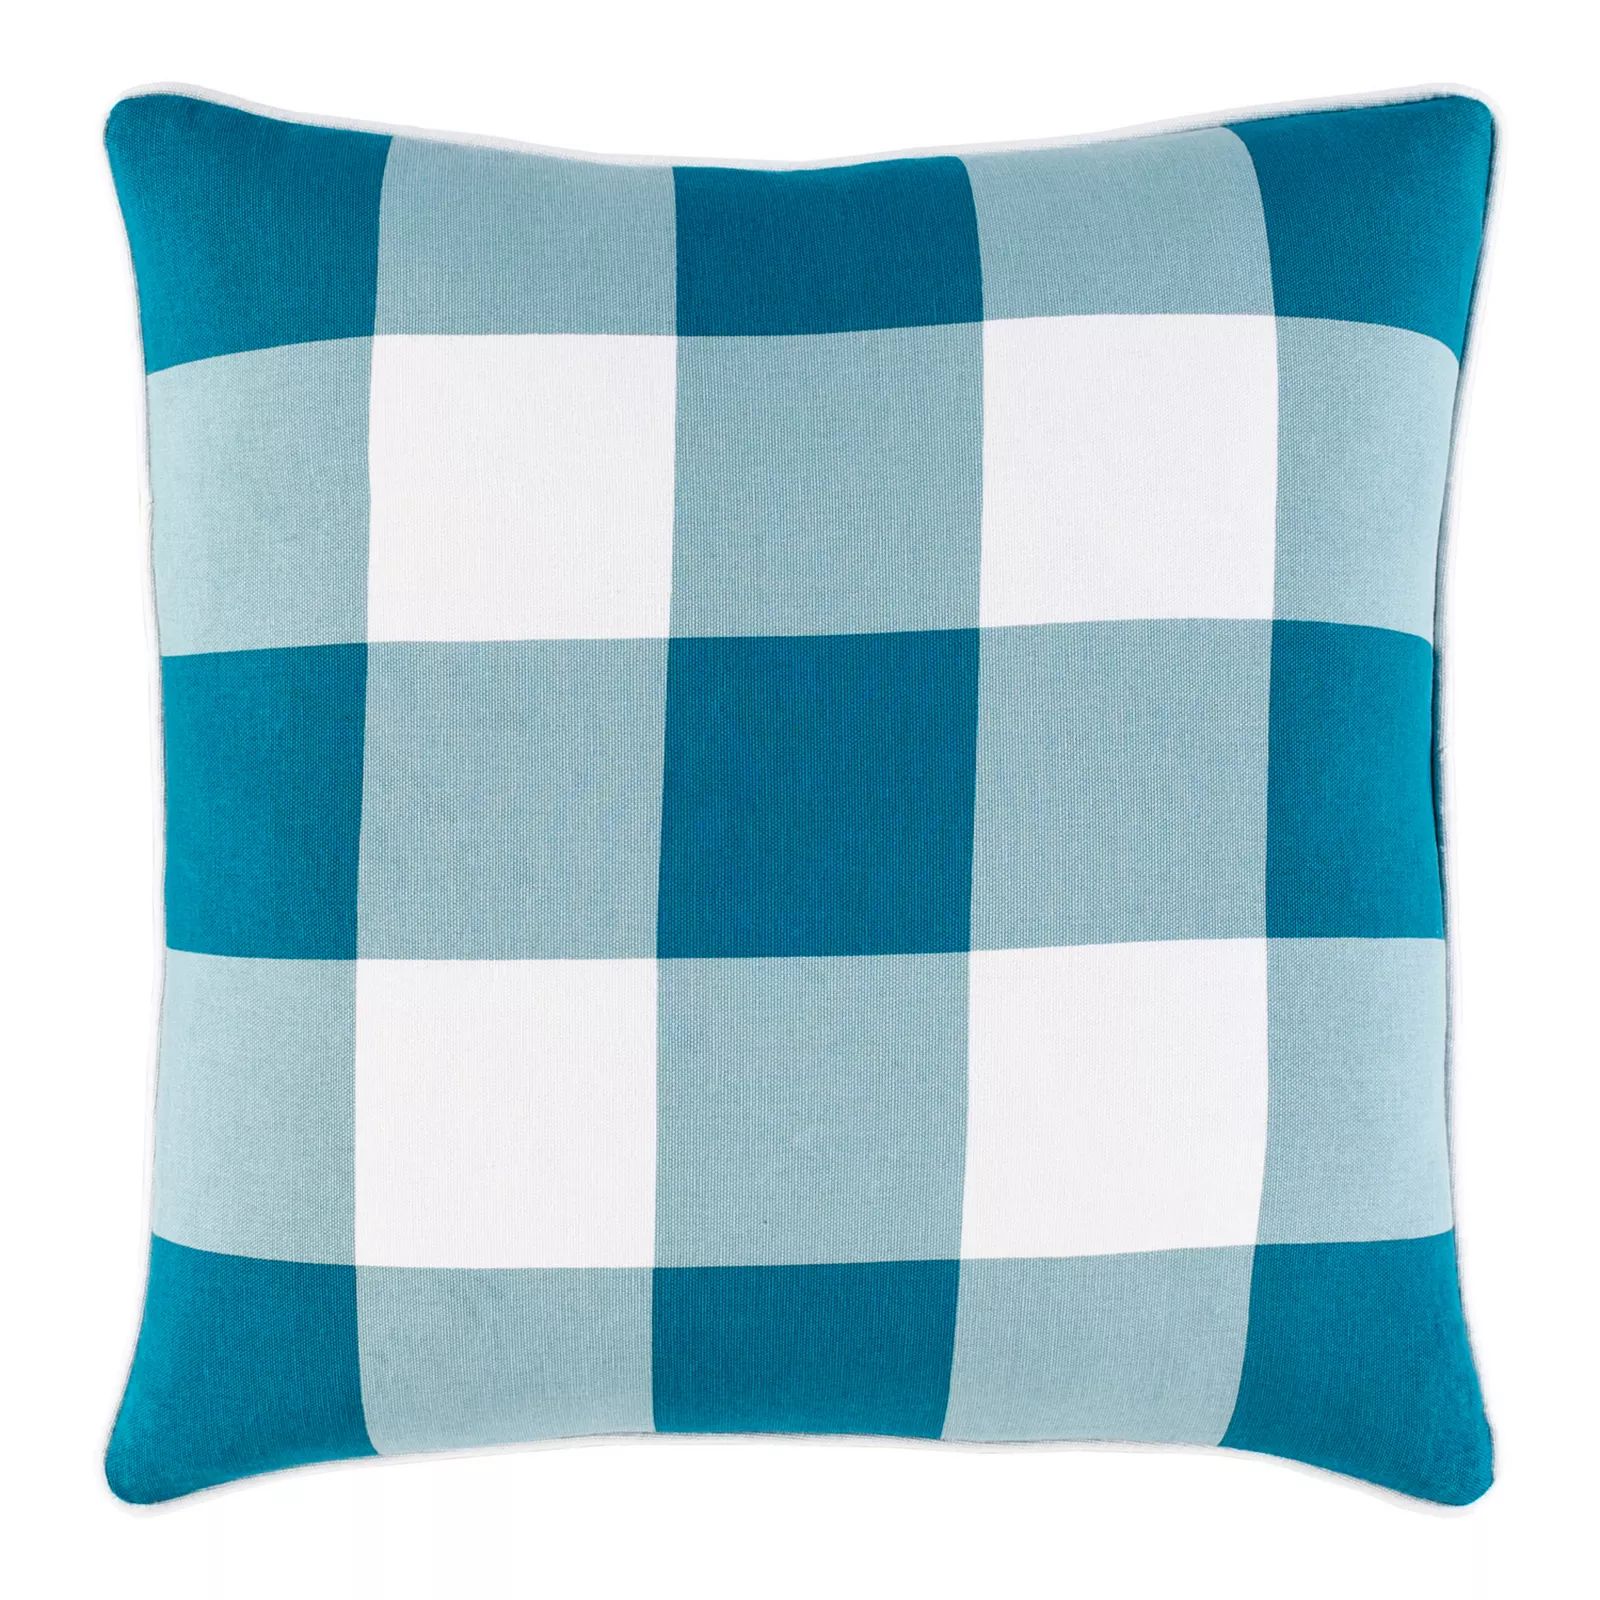 Decor 140 Julieta Cottage Throw Pillow, Turquoise/Blue, 20X20 | Kohl's